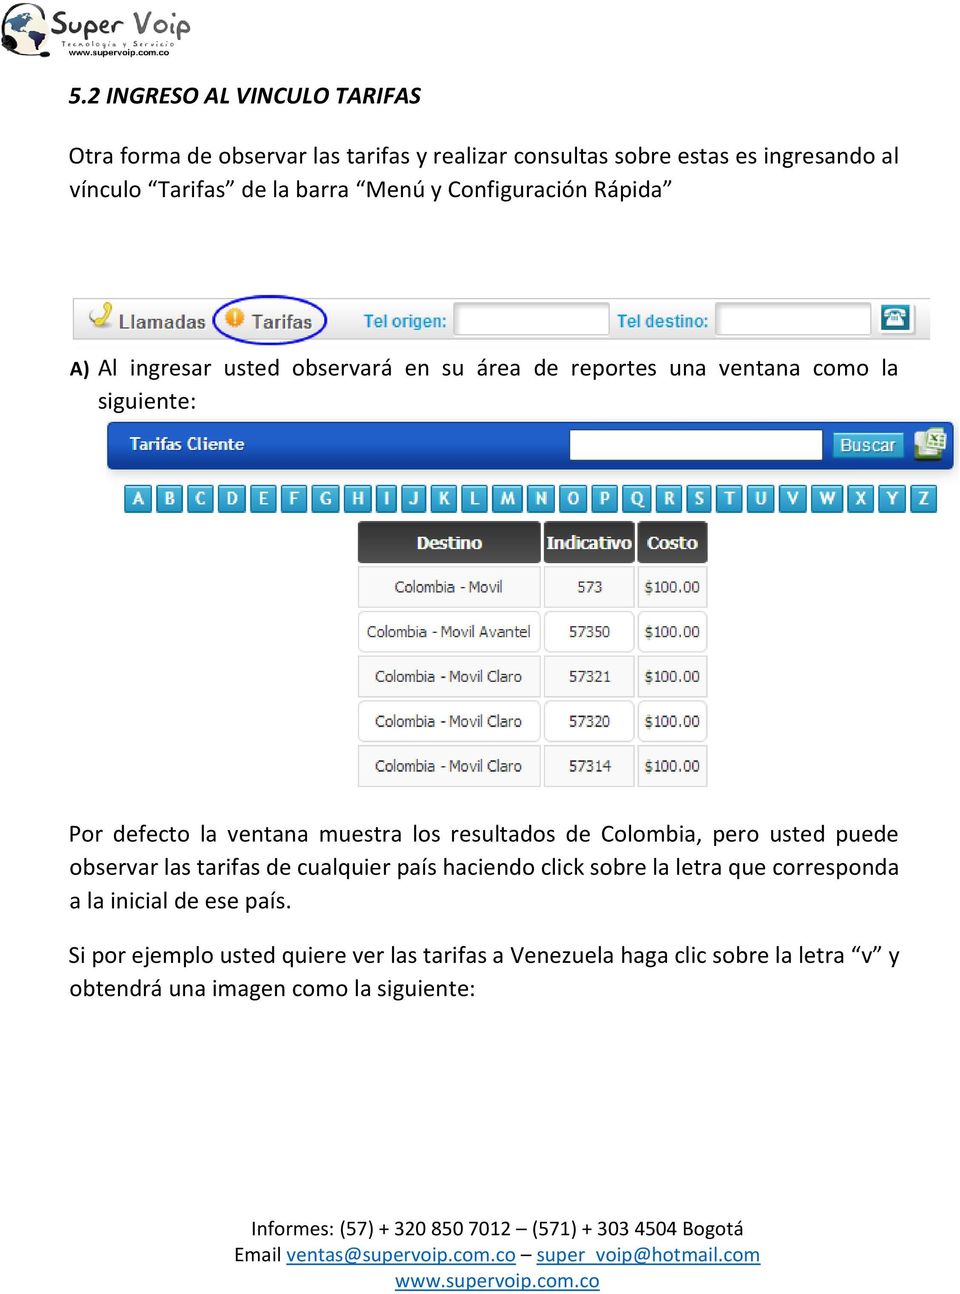 muestra los resultados de Colombia, pero usted puede observar las tarifas de cualquier país haciendo click sobre la letra que corresponda a